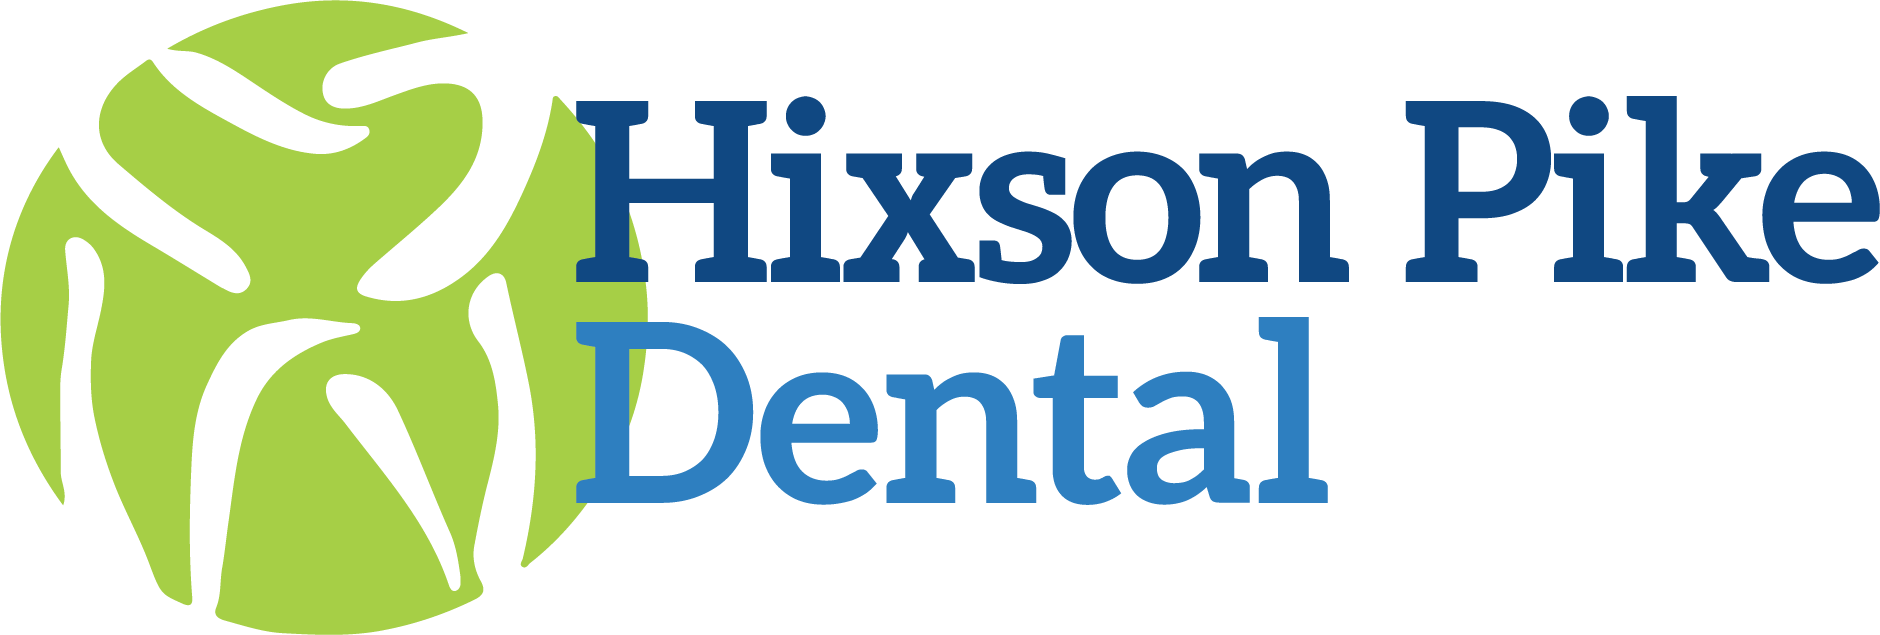 Hixson Pike Dental Logo